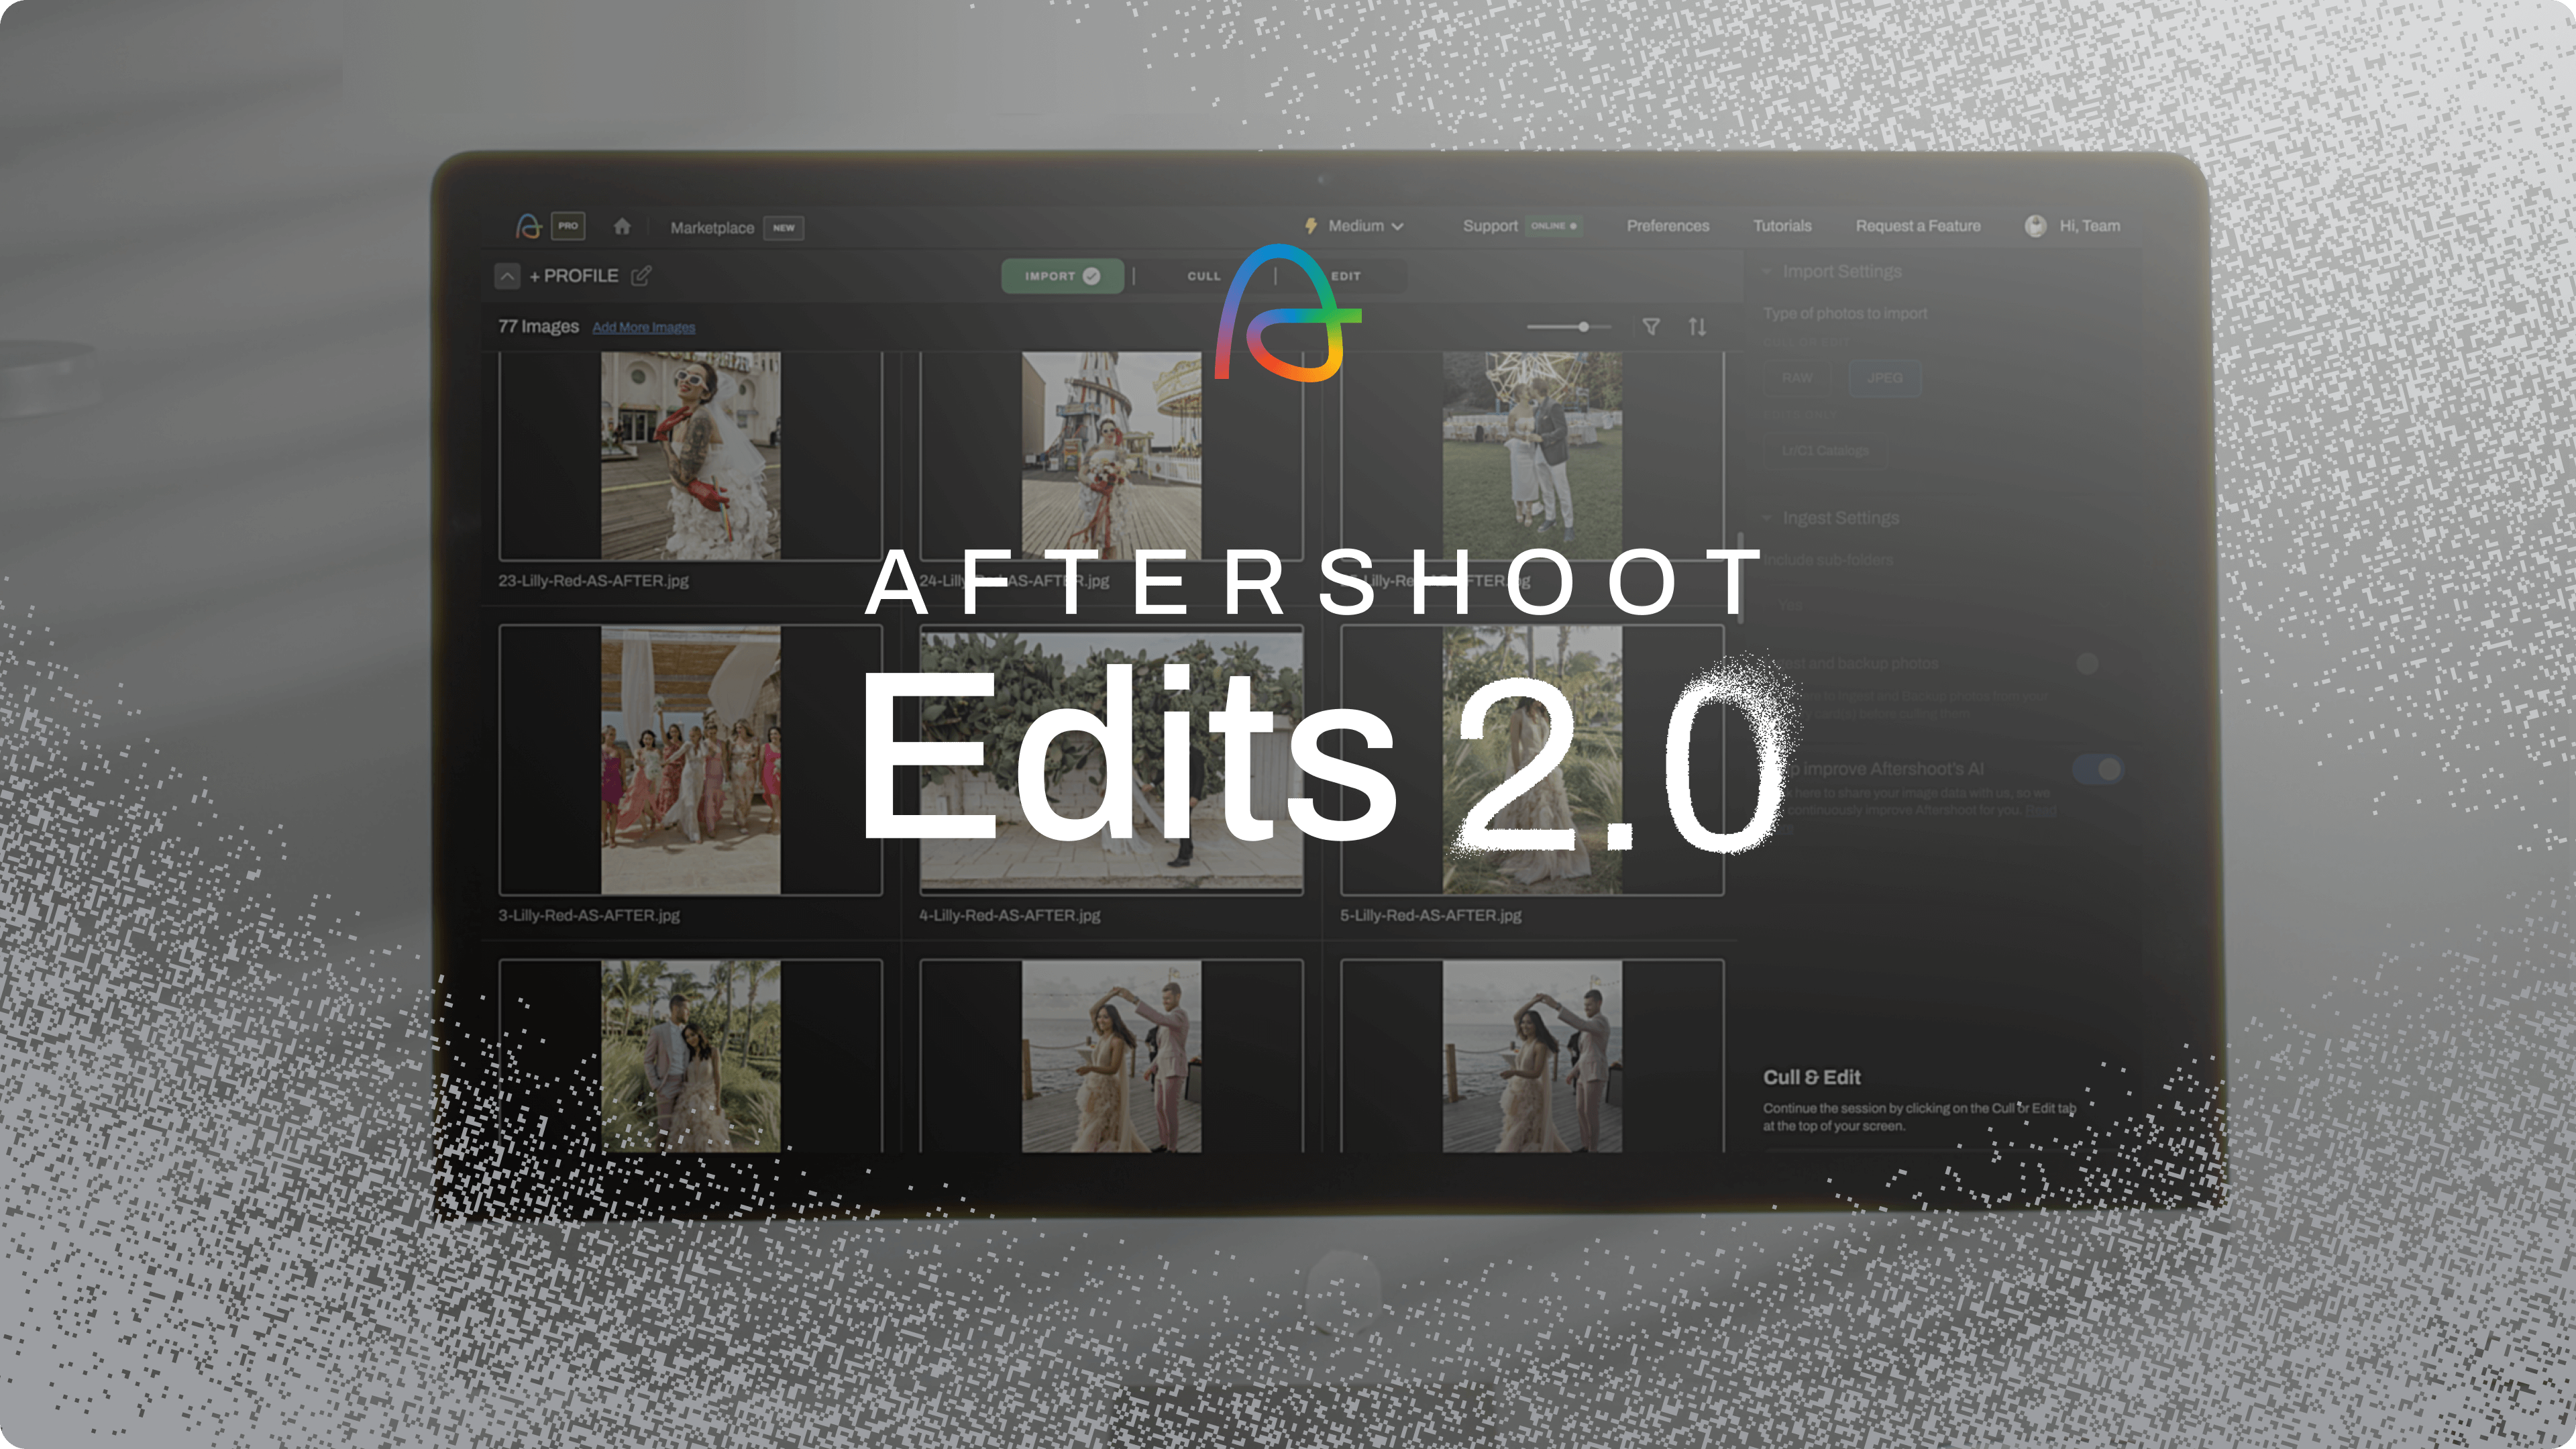 Aftershoot Edits 2.0